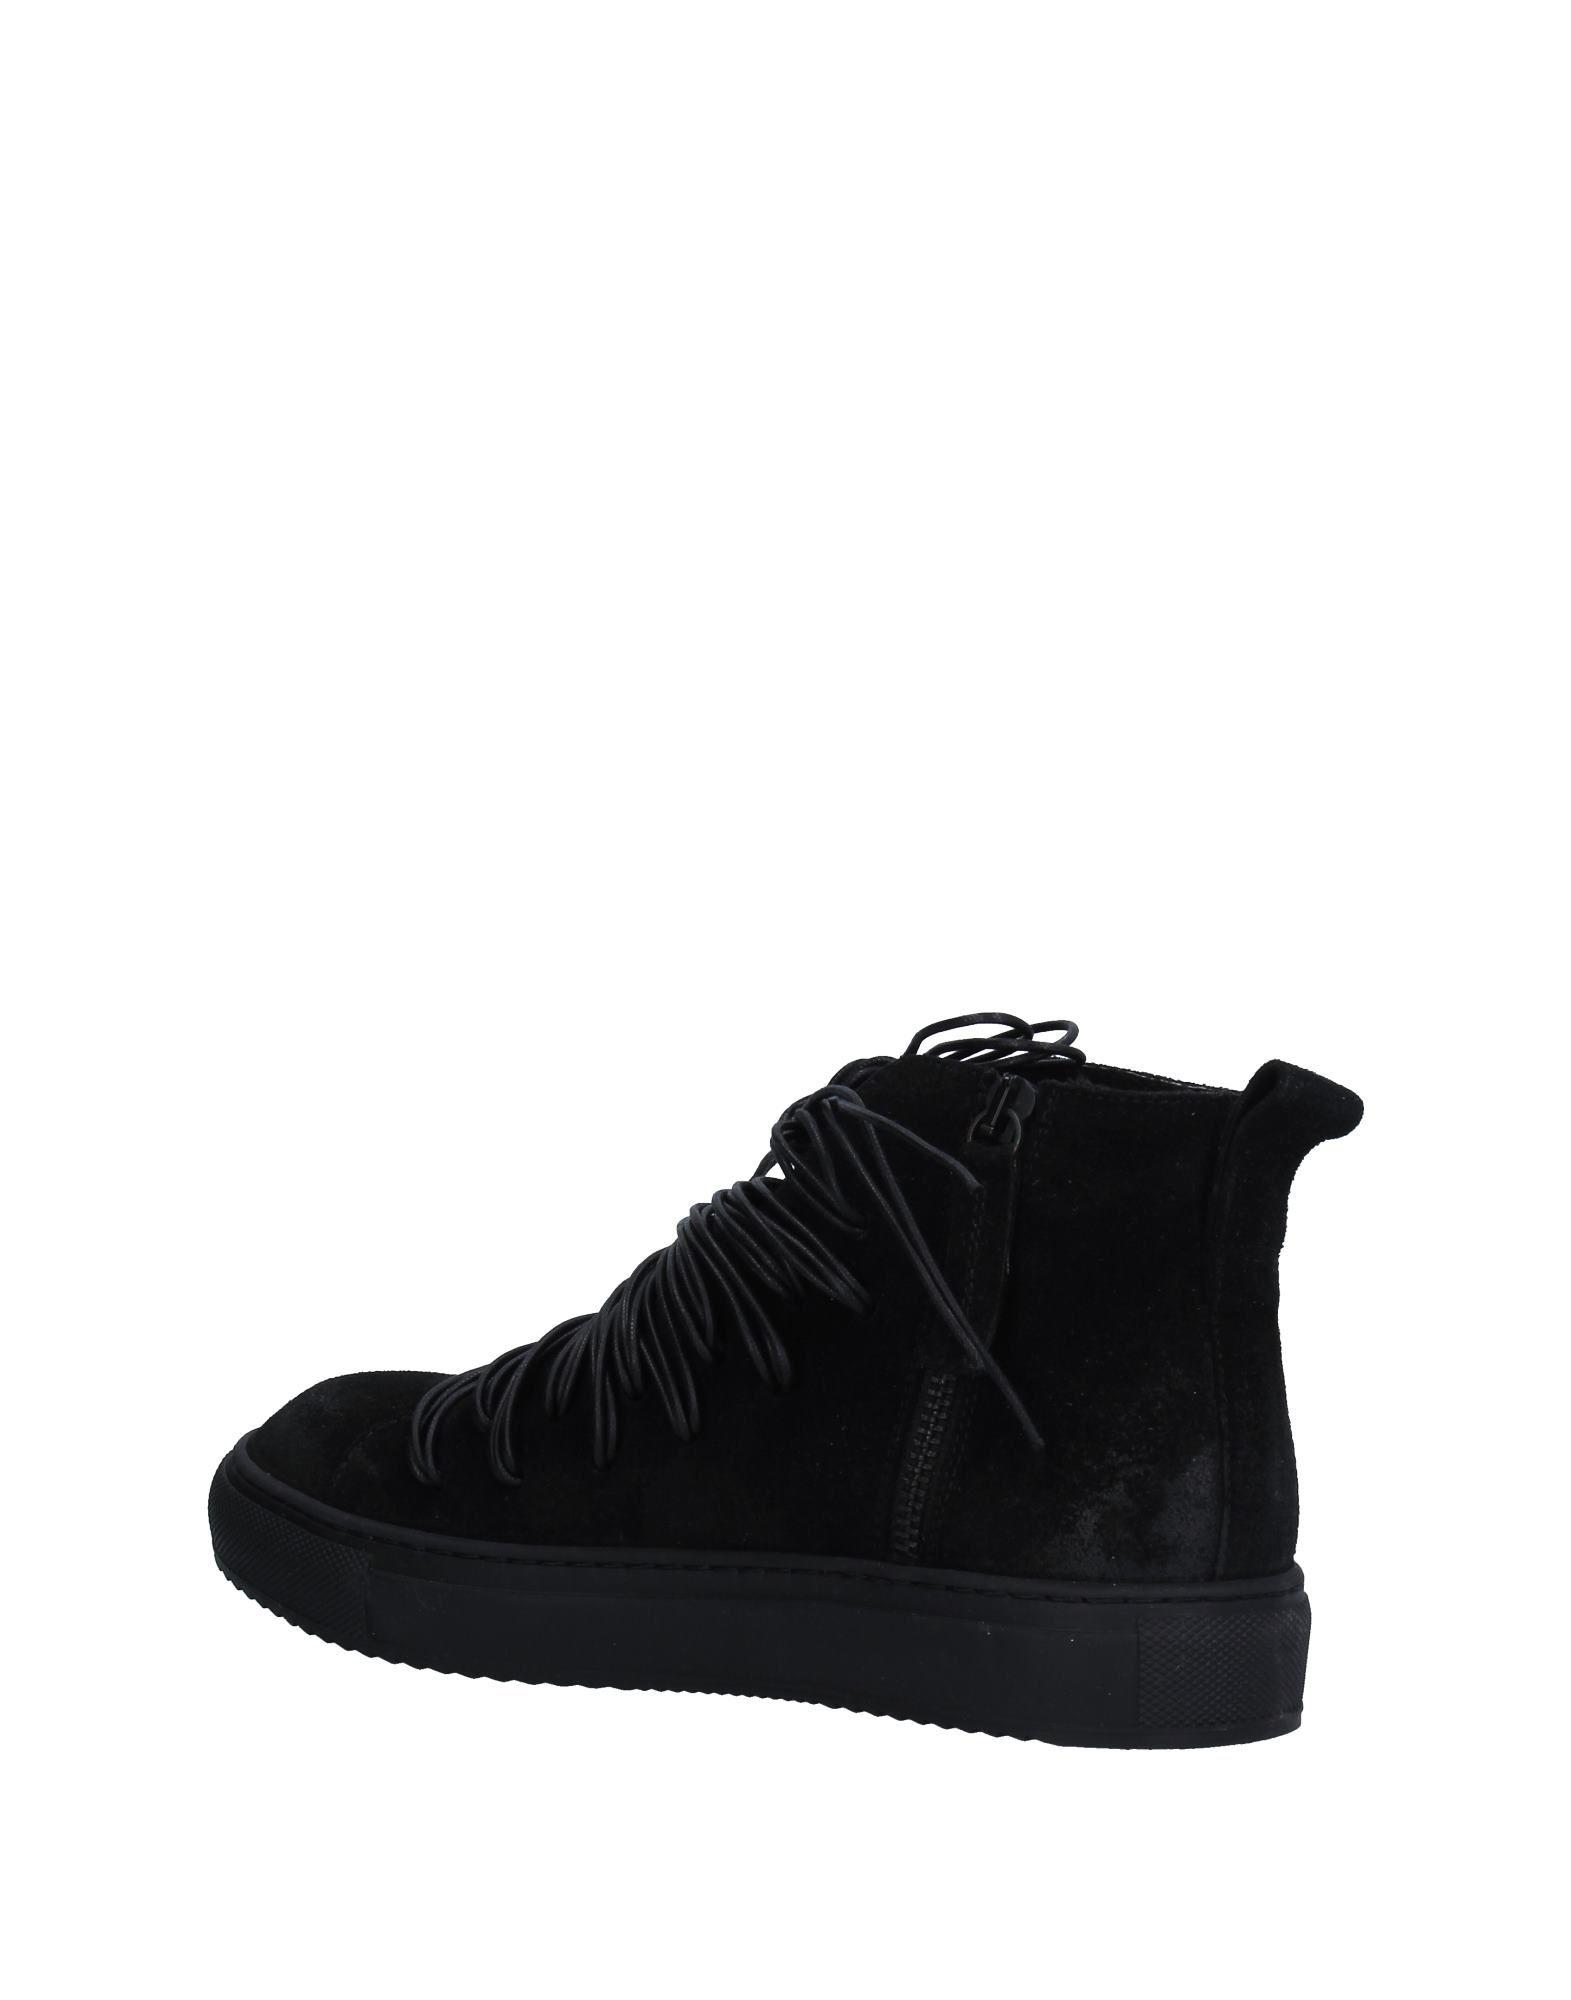 Rundholz Black Label High-tops & Sneakers in Black | Lyst